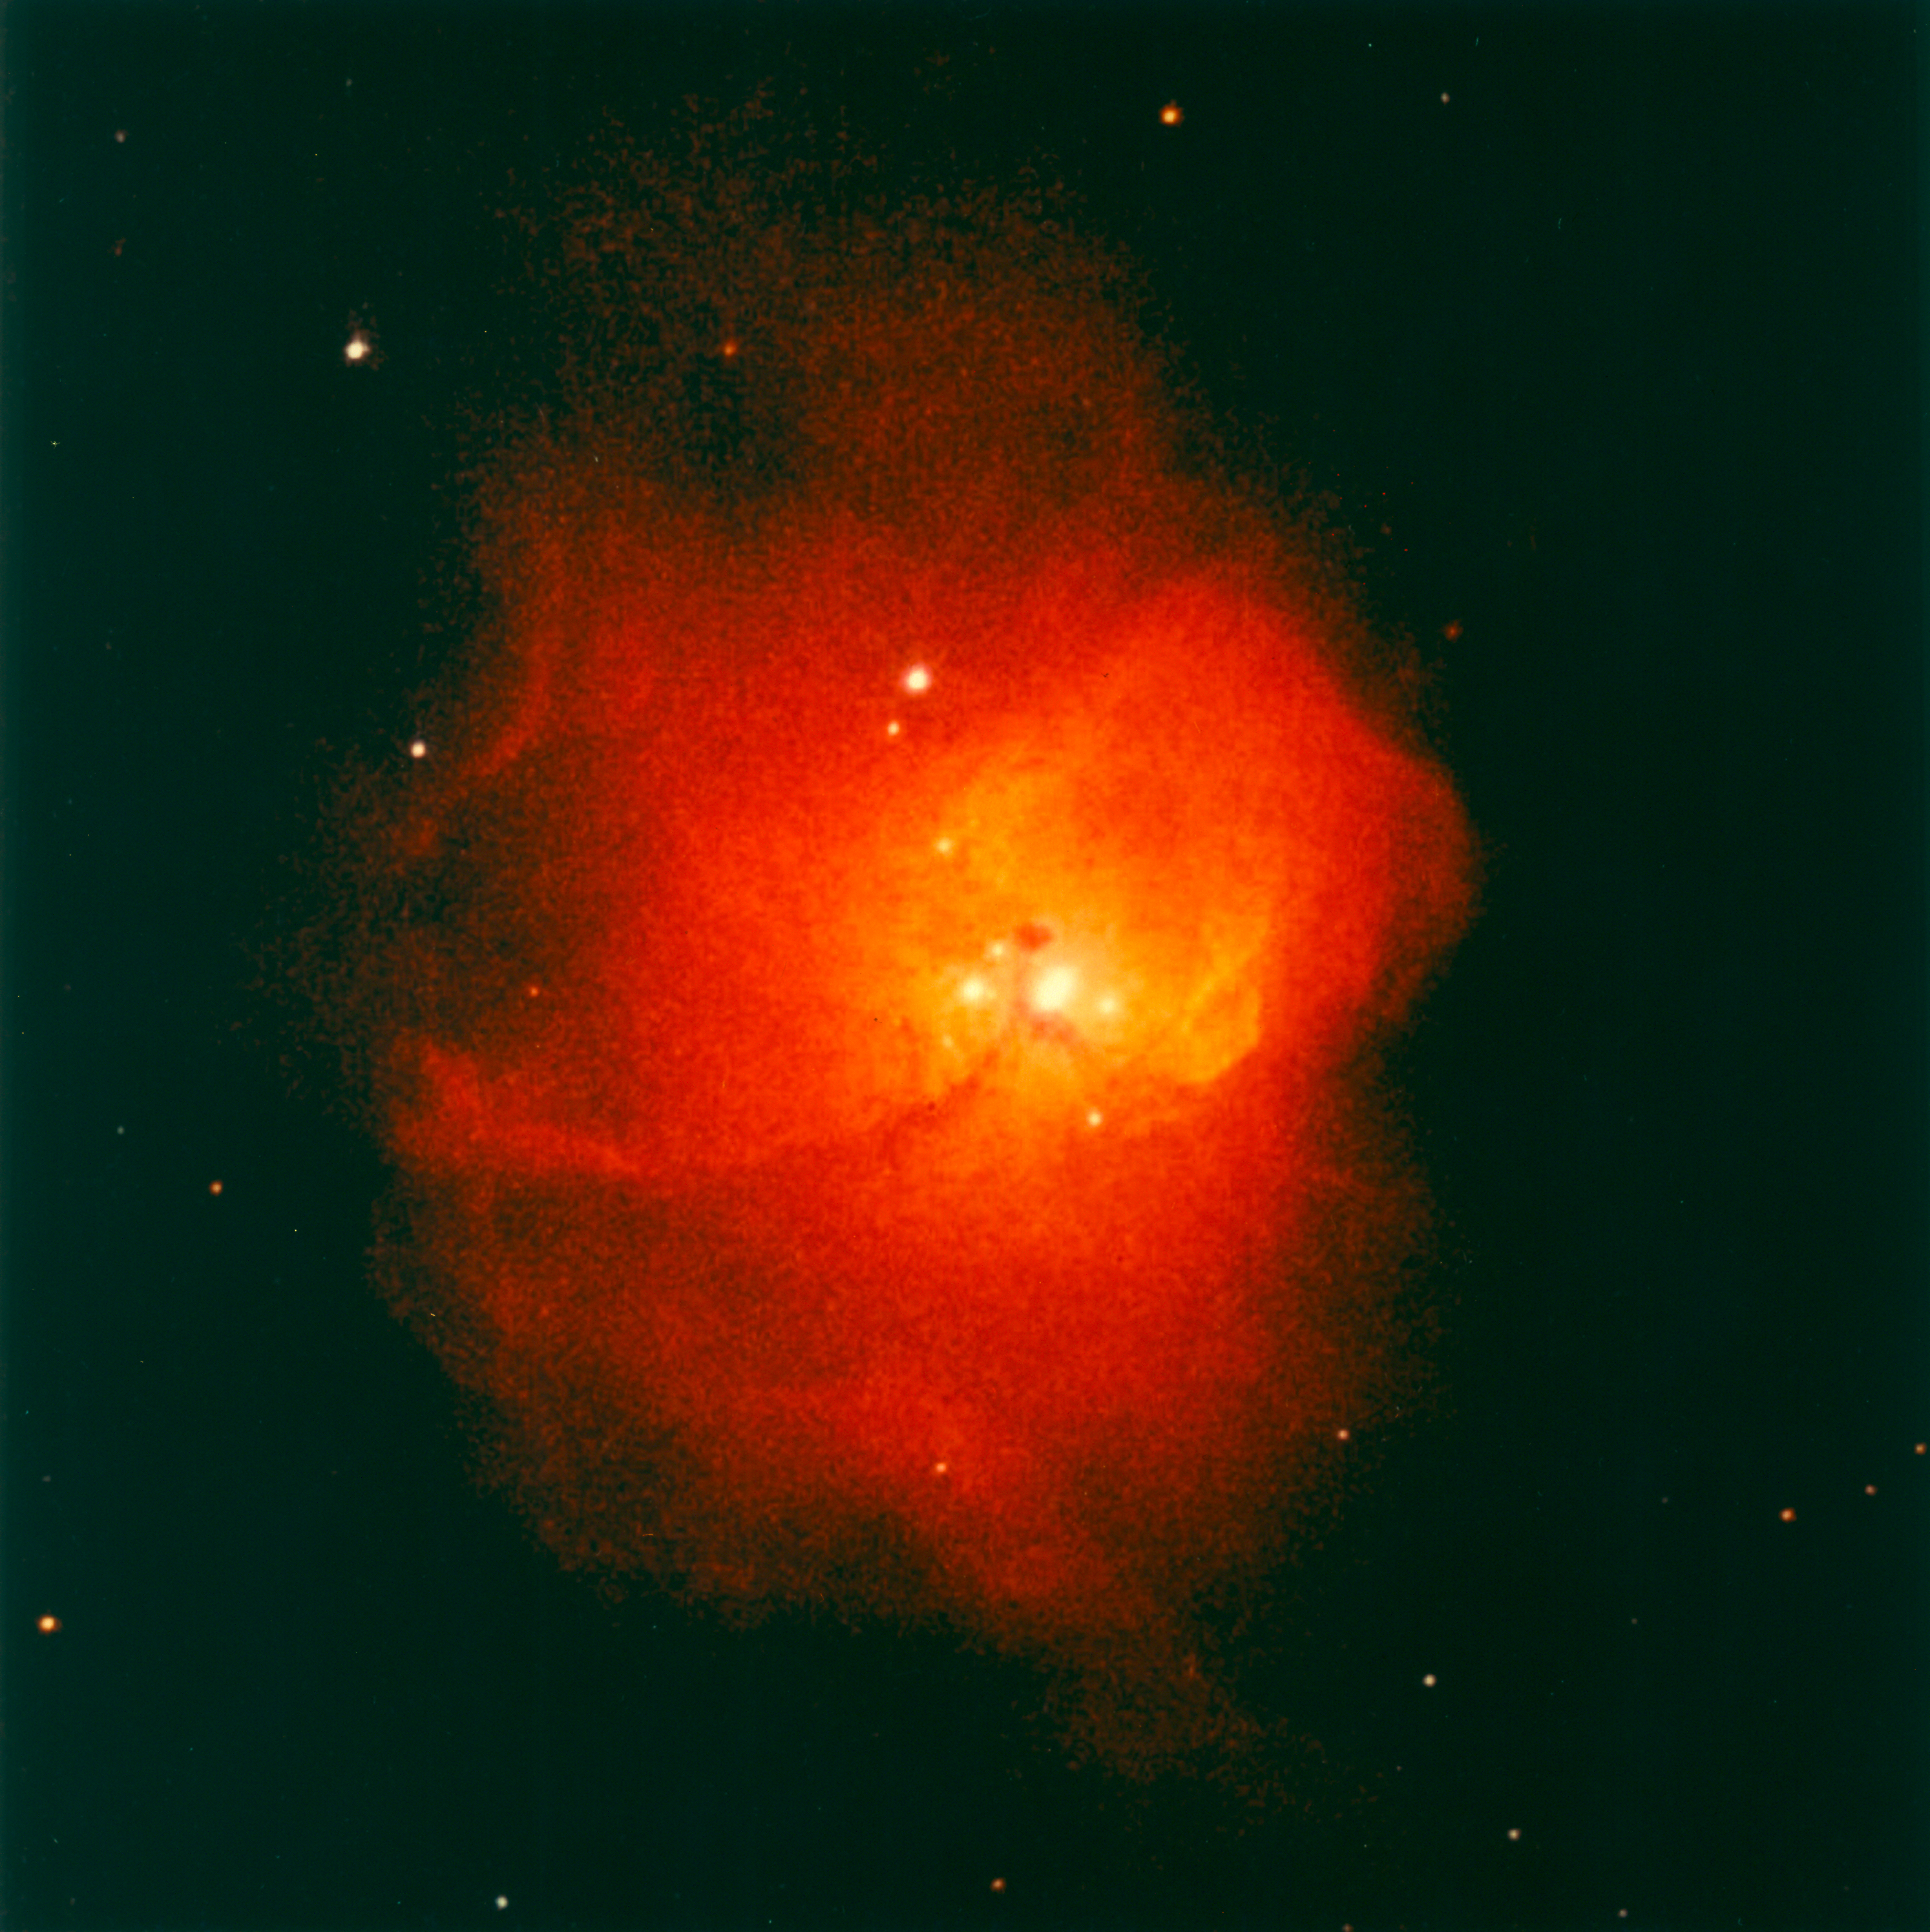 N81 in the Small Magellanic Cloud - GPN-2000-000951